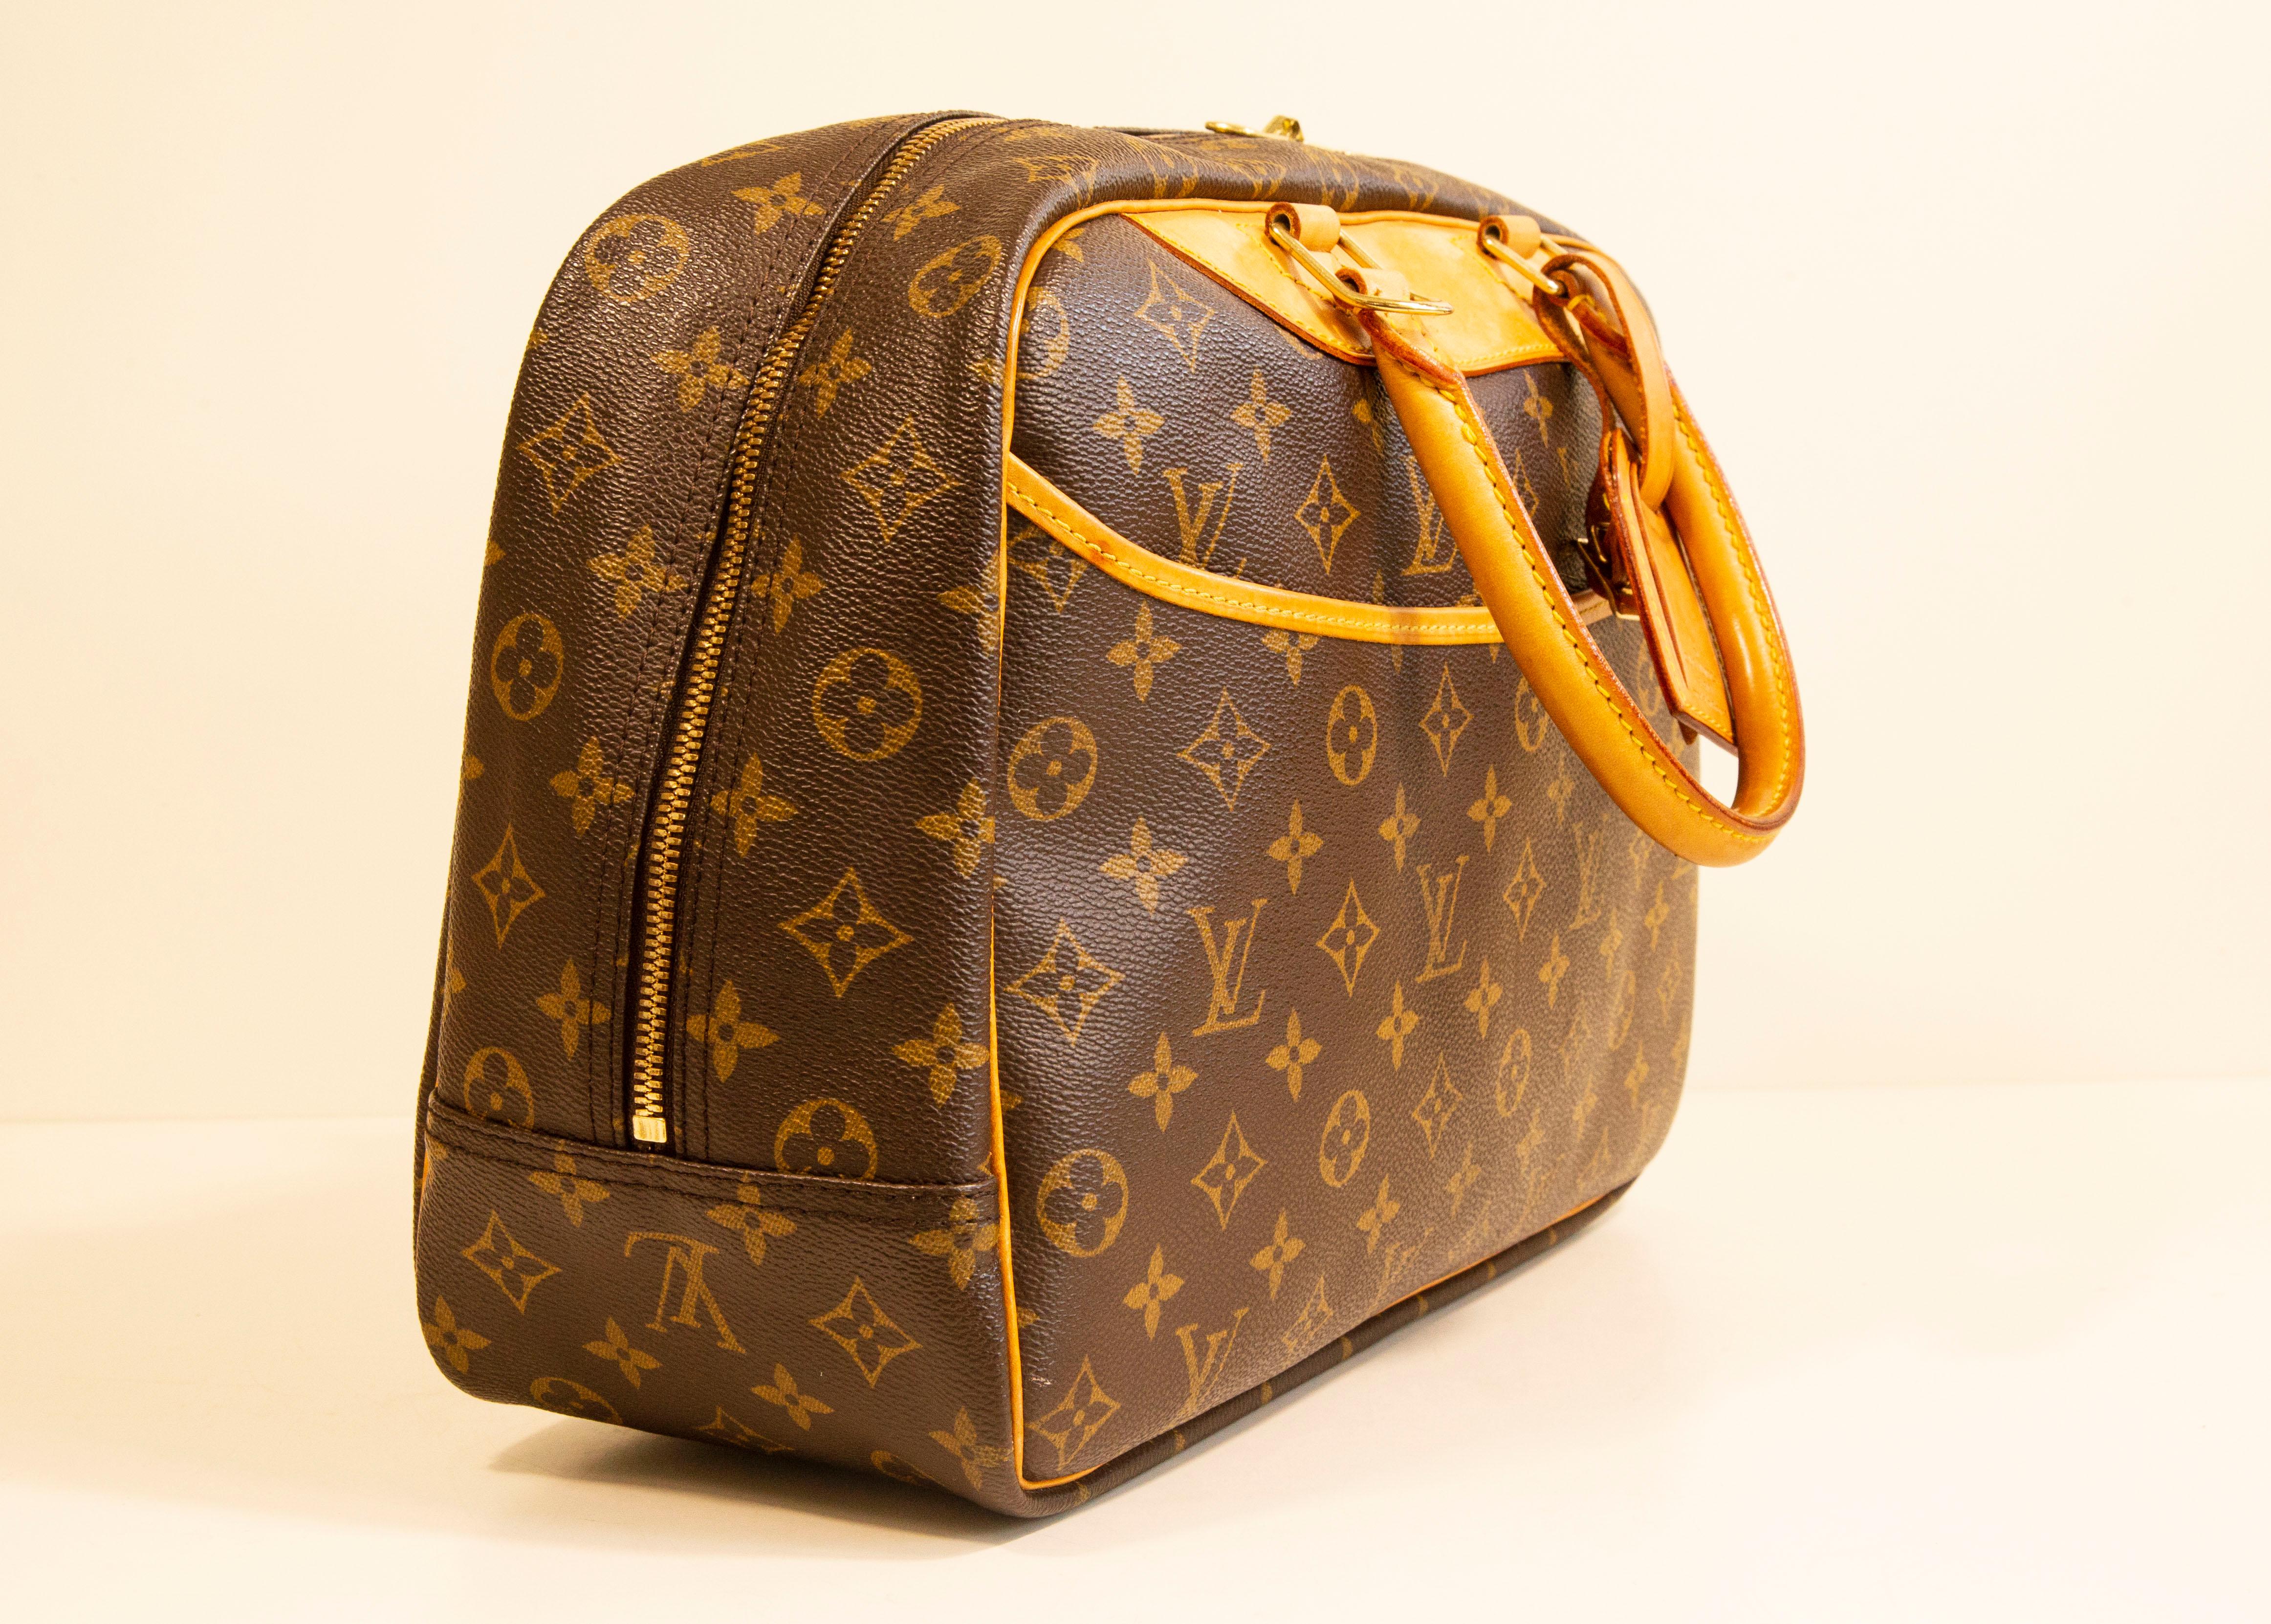 Un bolso vintage Deauville de Louis Vuitton. El bolso está hecho de lona recubierta de vinilo con monograma marrón, con ribetes de piel Vachetta beige/marrón claro y herrajes en tono bronce. El interior está forrado de tejido sintético beige, y